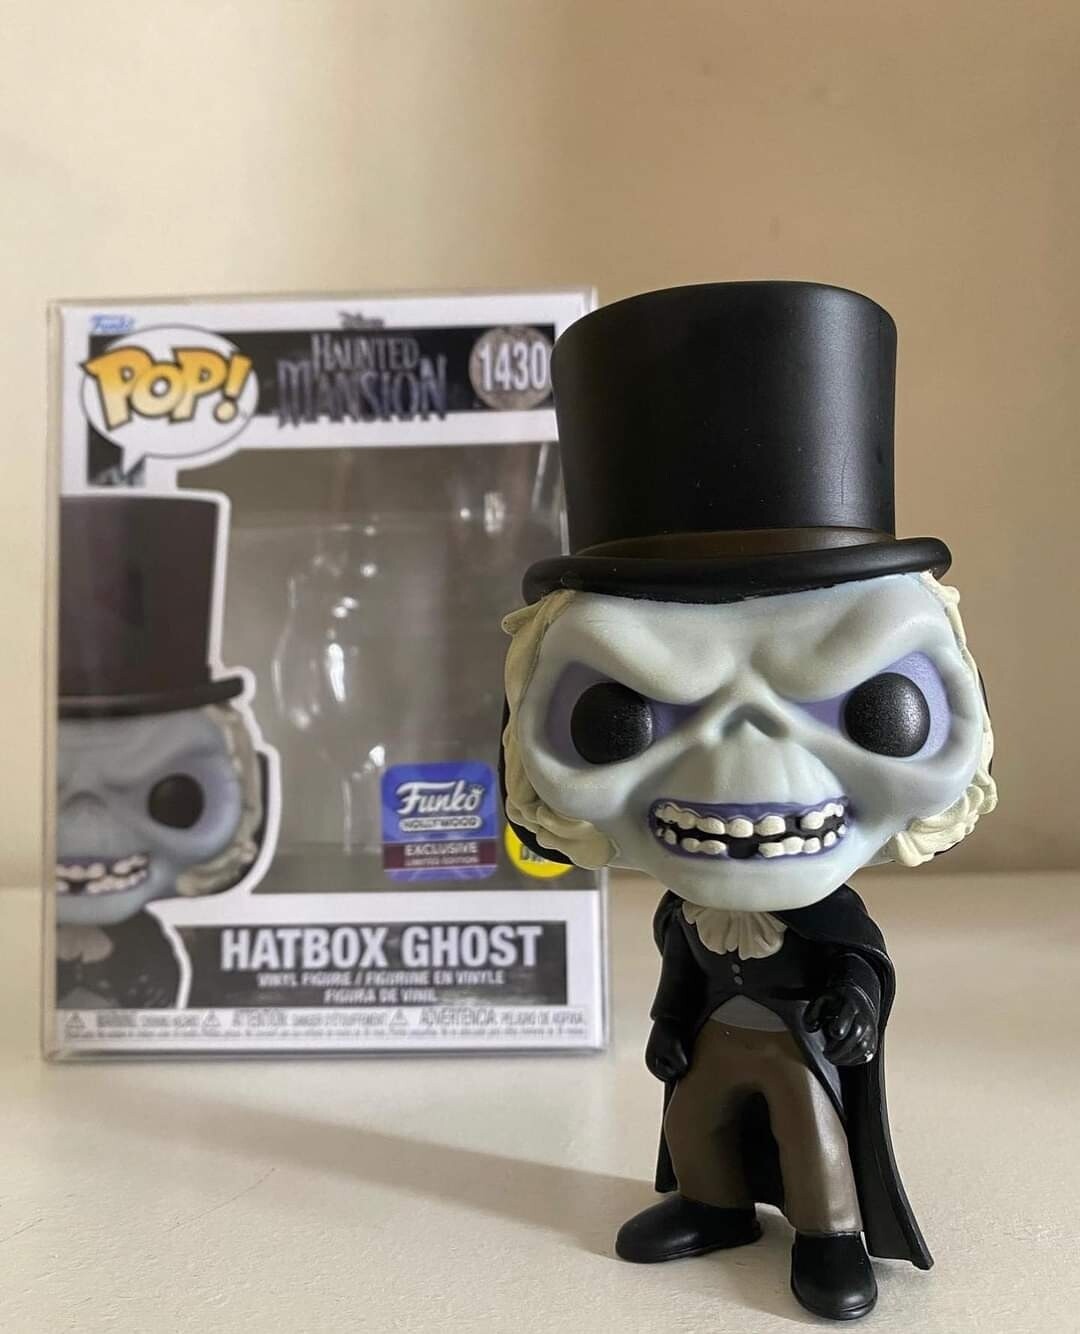 Funko POp Hatbox Ghost Exclusivo de Funko Hollywood